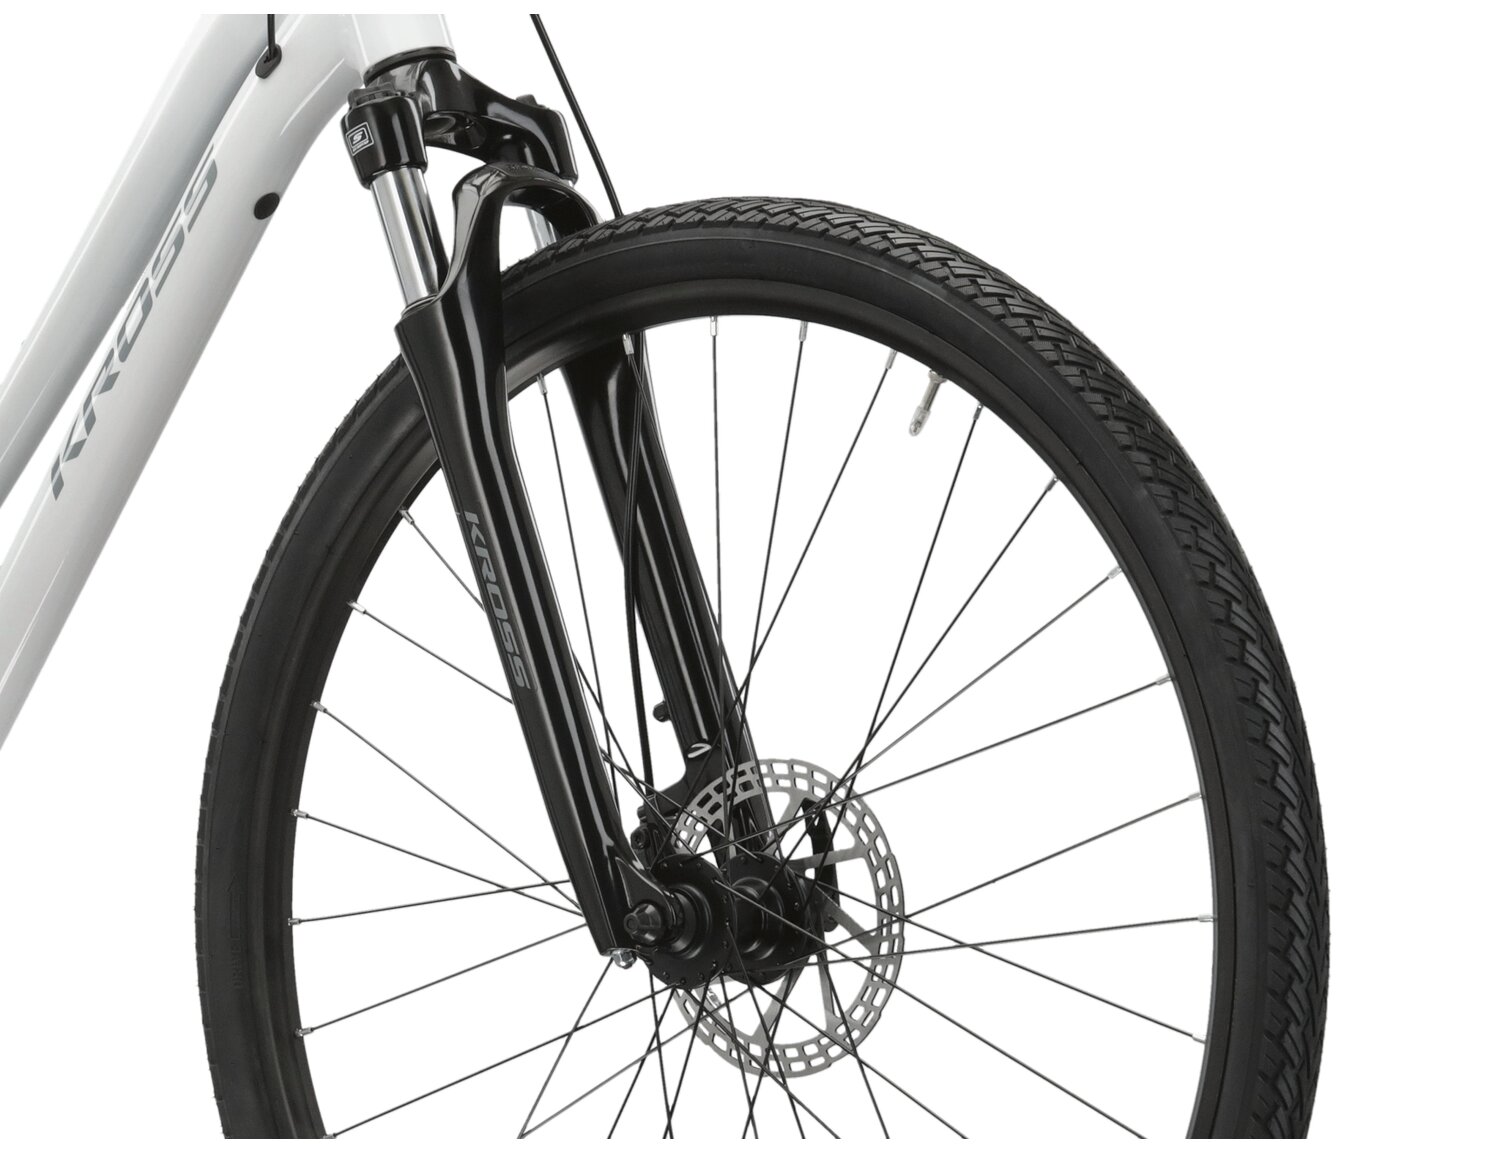  Amortyzowany widelec SR Suntour Nex, rama z aluminium 6061 oraz opony Wanda G5001 28x1,75 w rowerze crossowym Kross Evado 3.0 damskim 